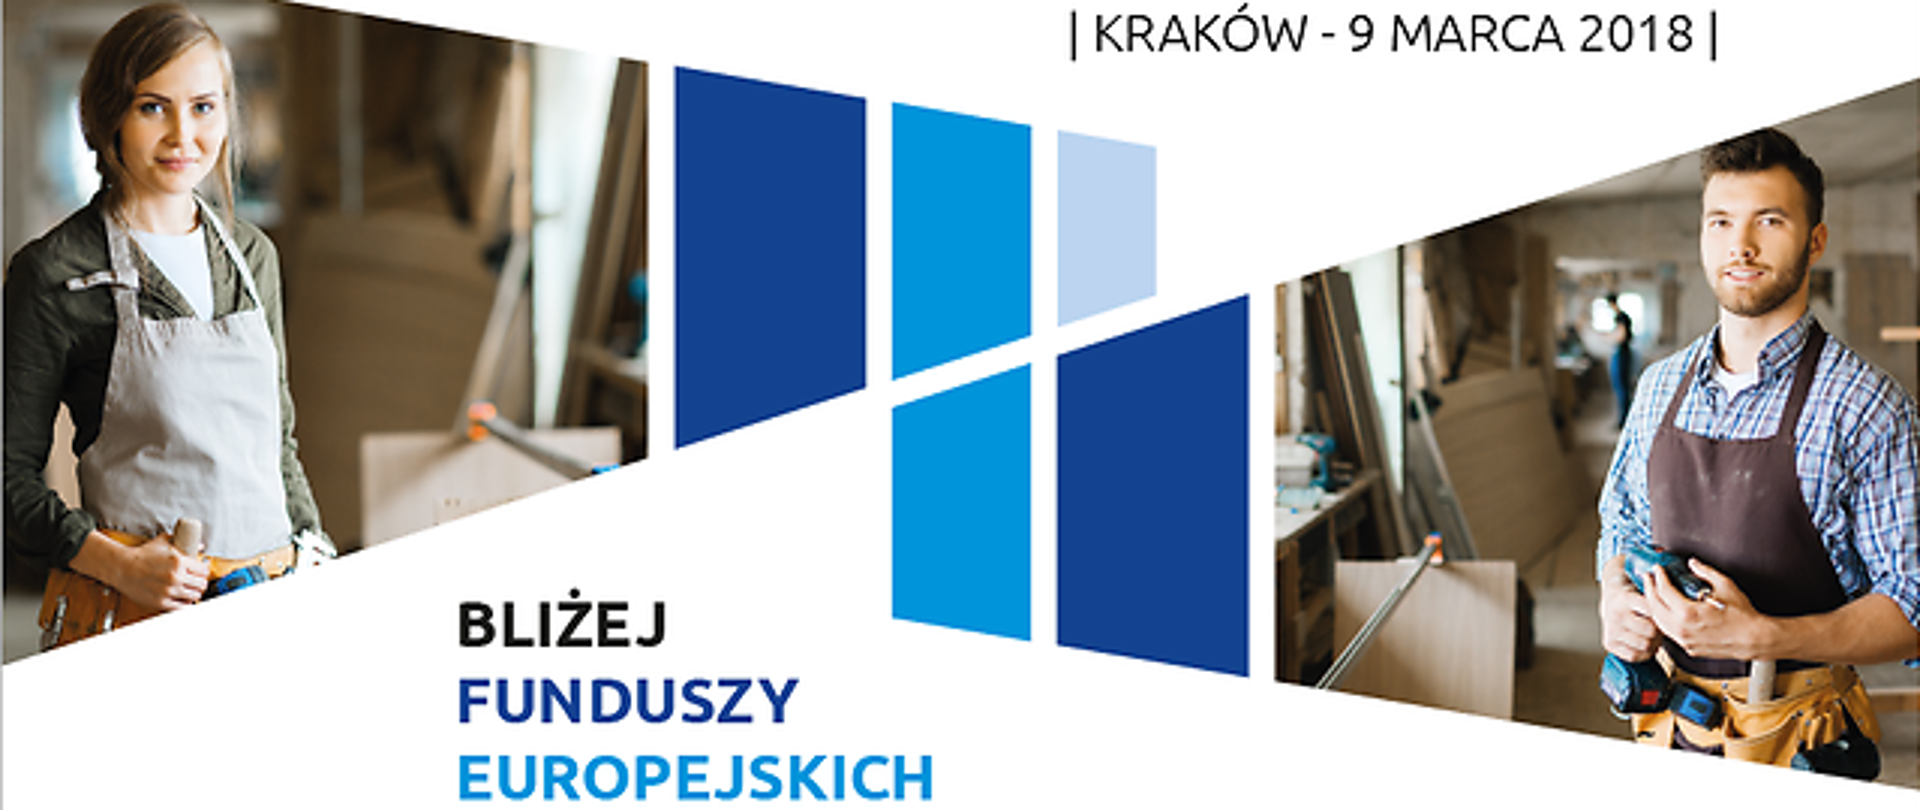 Zaproszenie na konferencję "Bliżej Funduszy Europejskich" w Krakowie